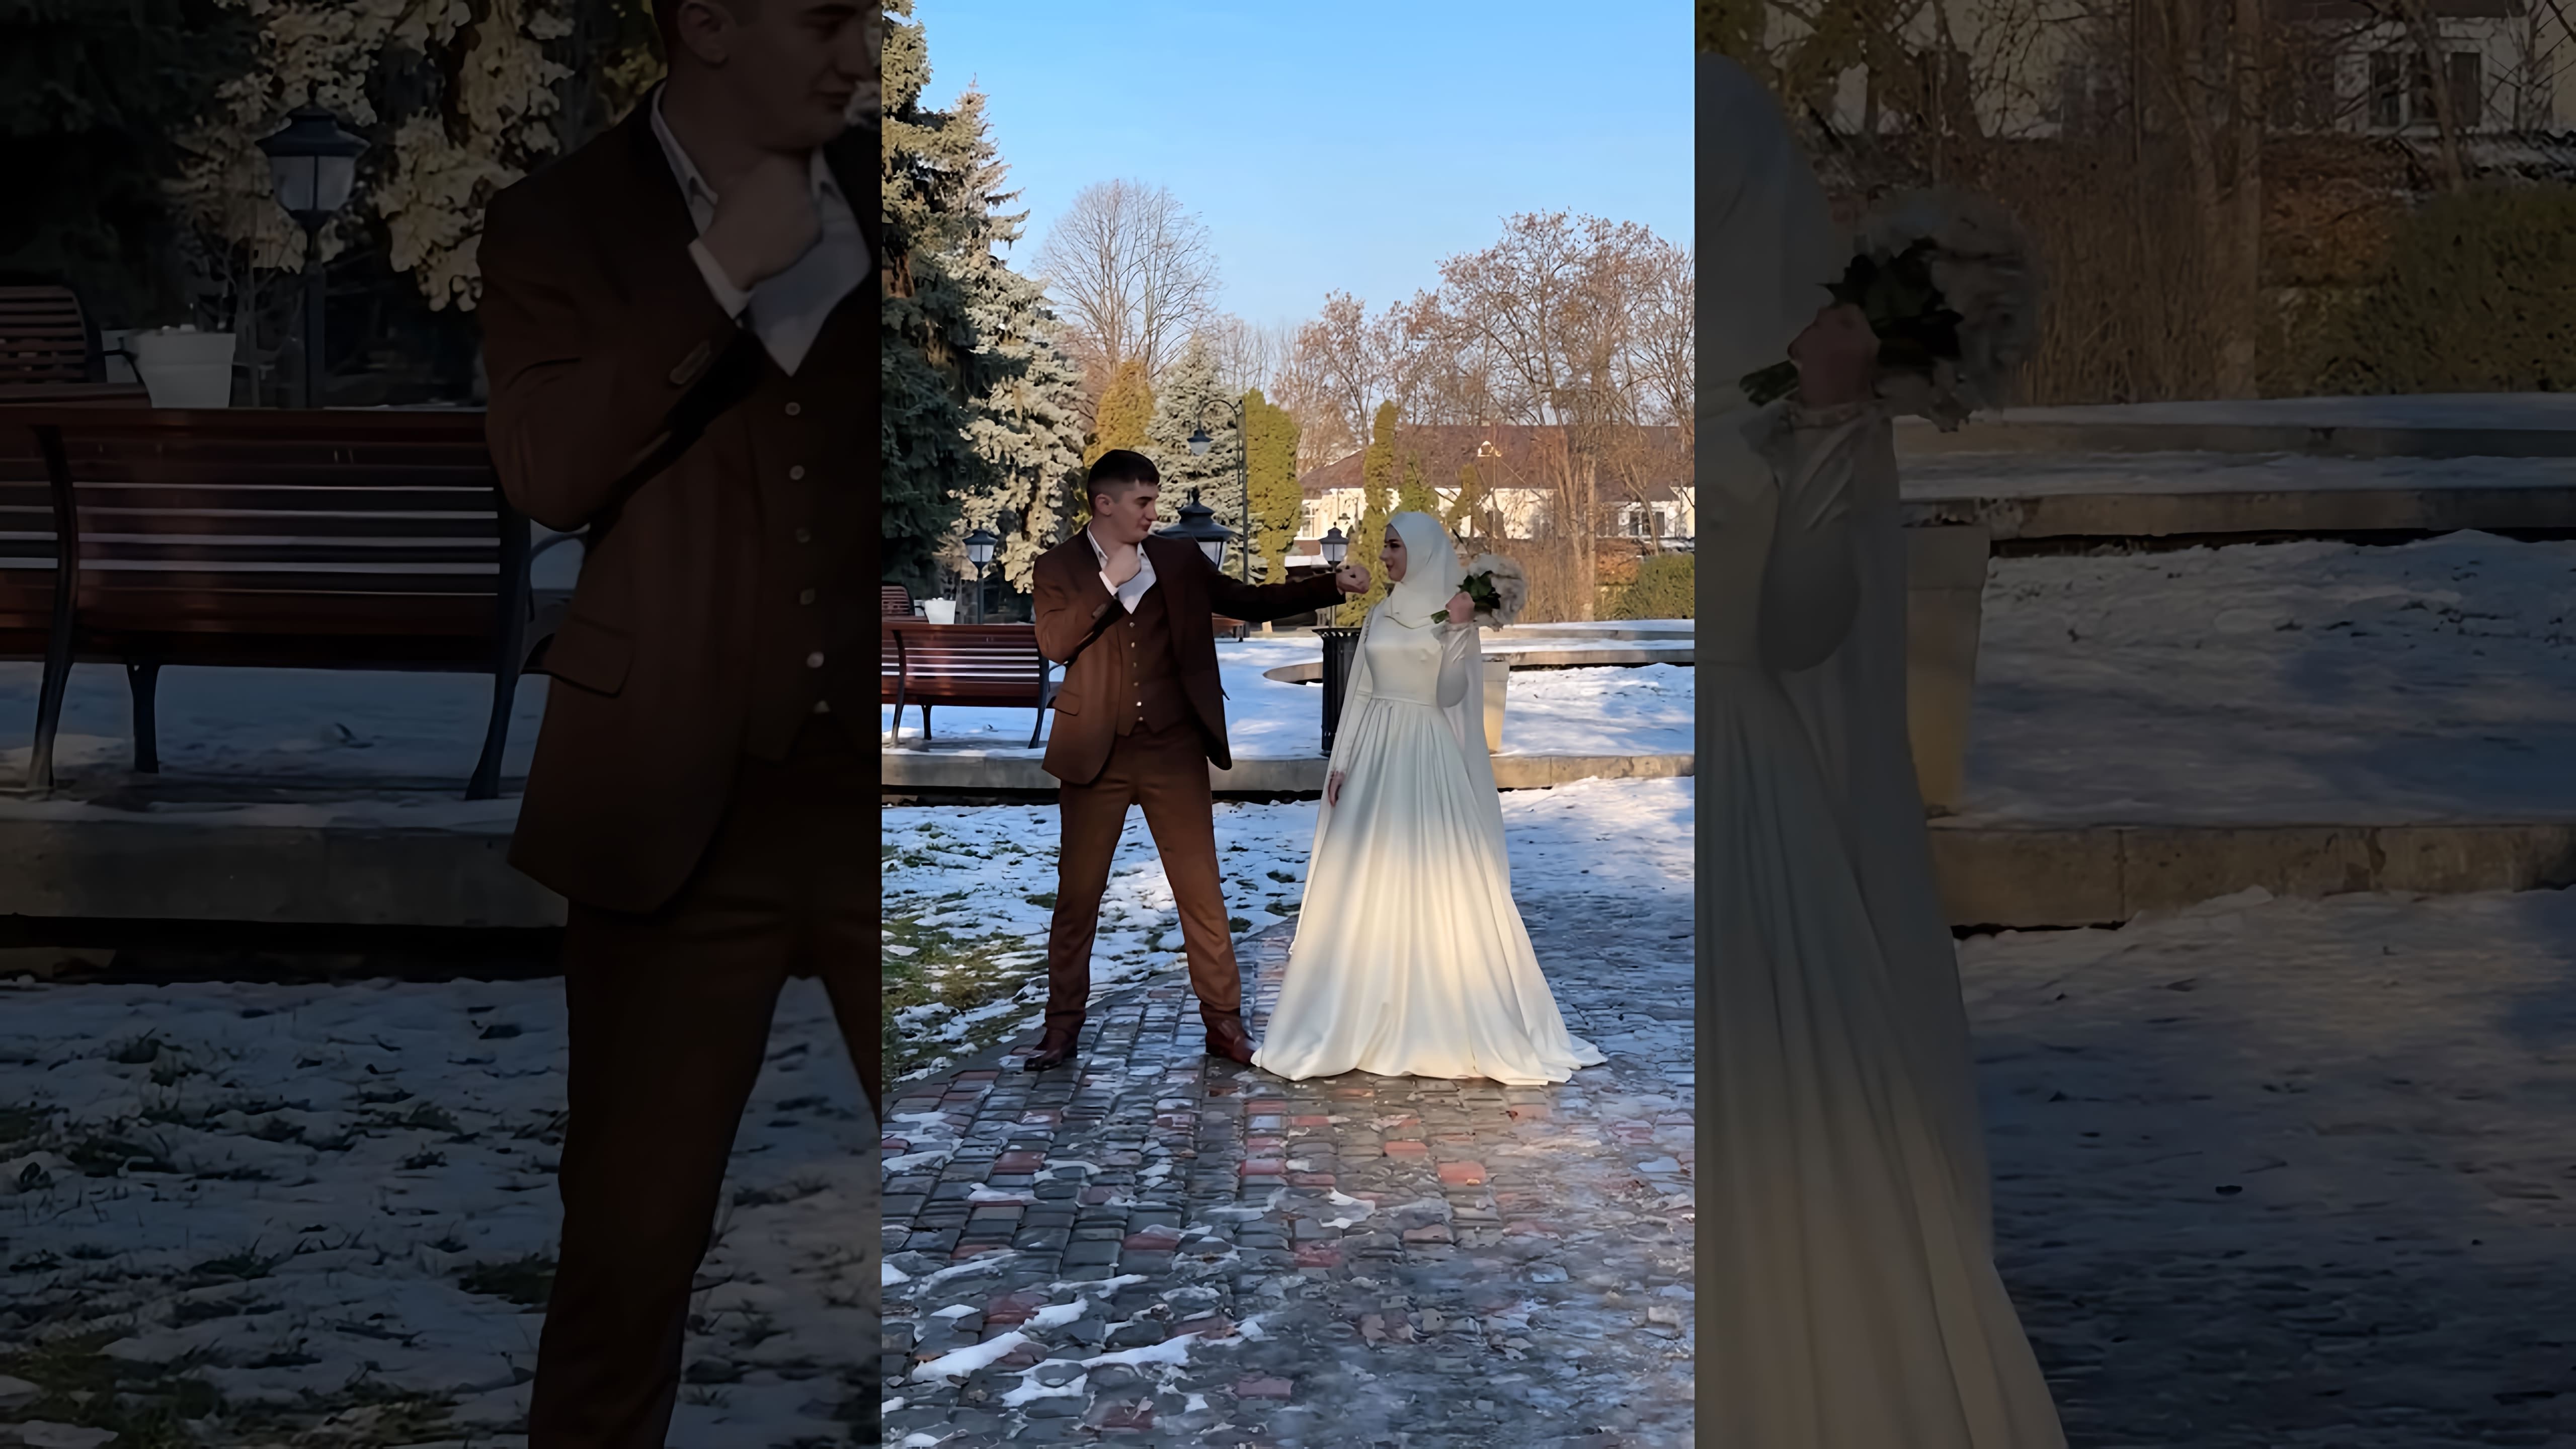 В этом видео-ролике мы видим молодого человека, который, находясь на свадьбе, неожиданно ударил свою невесту